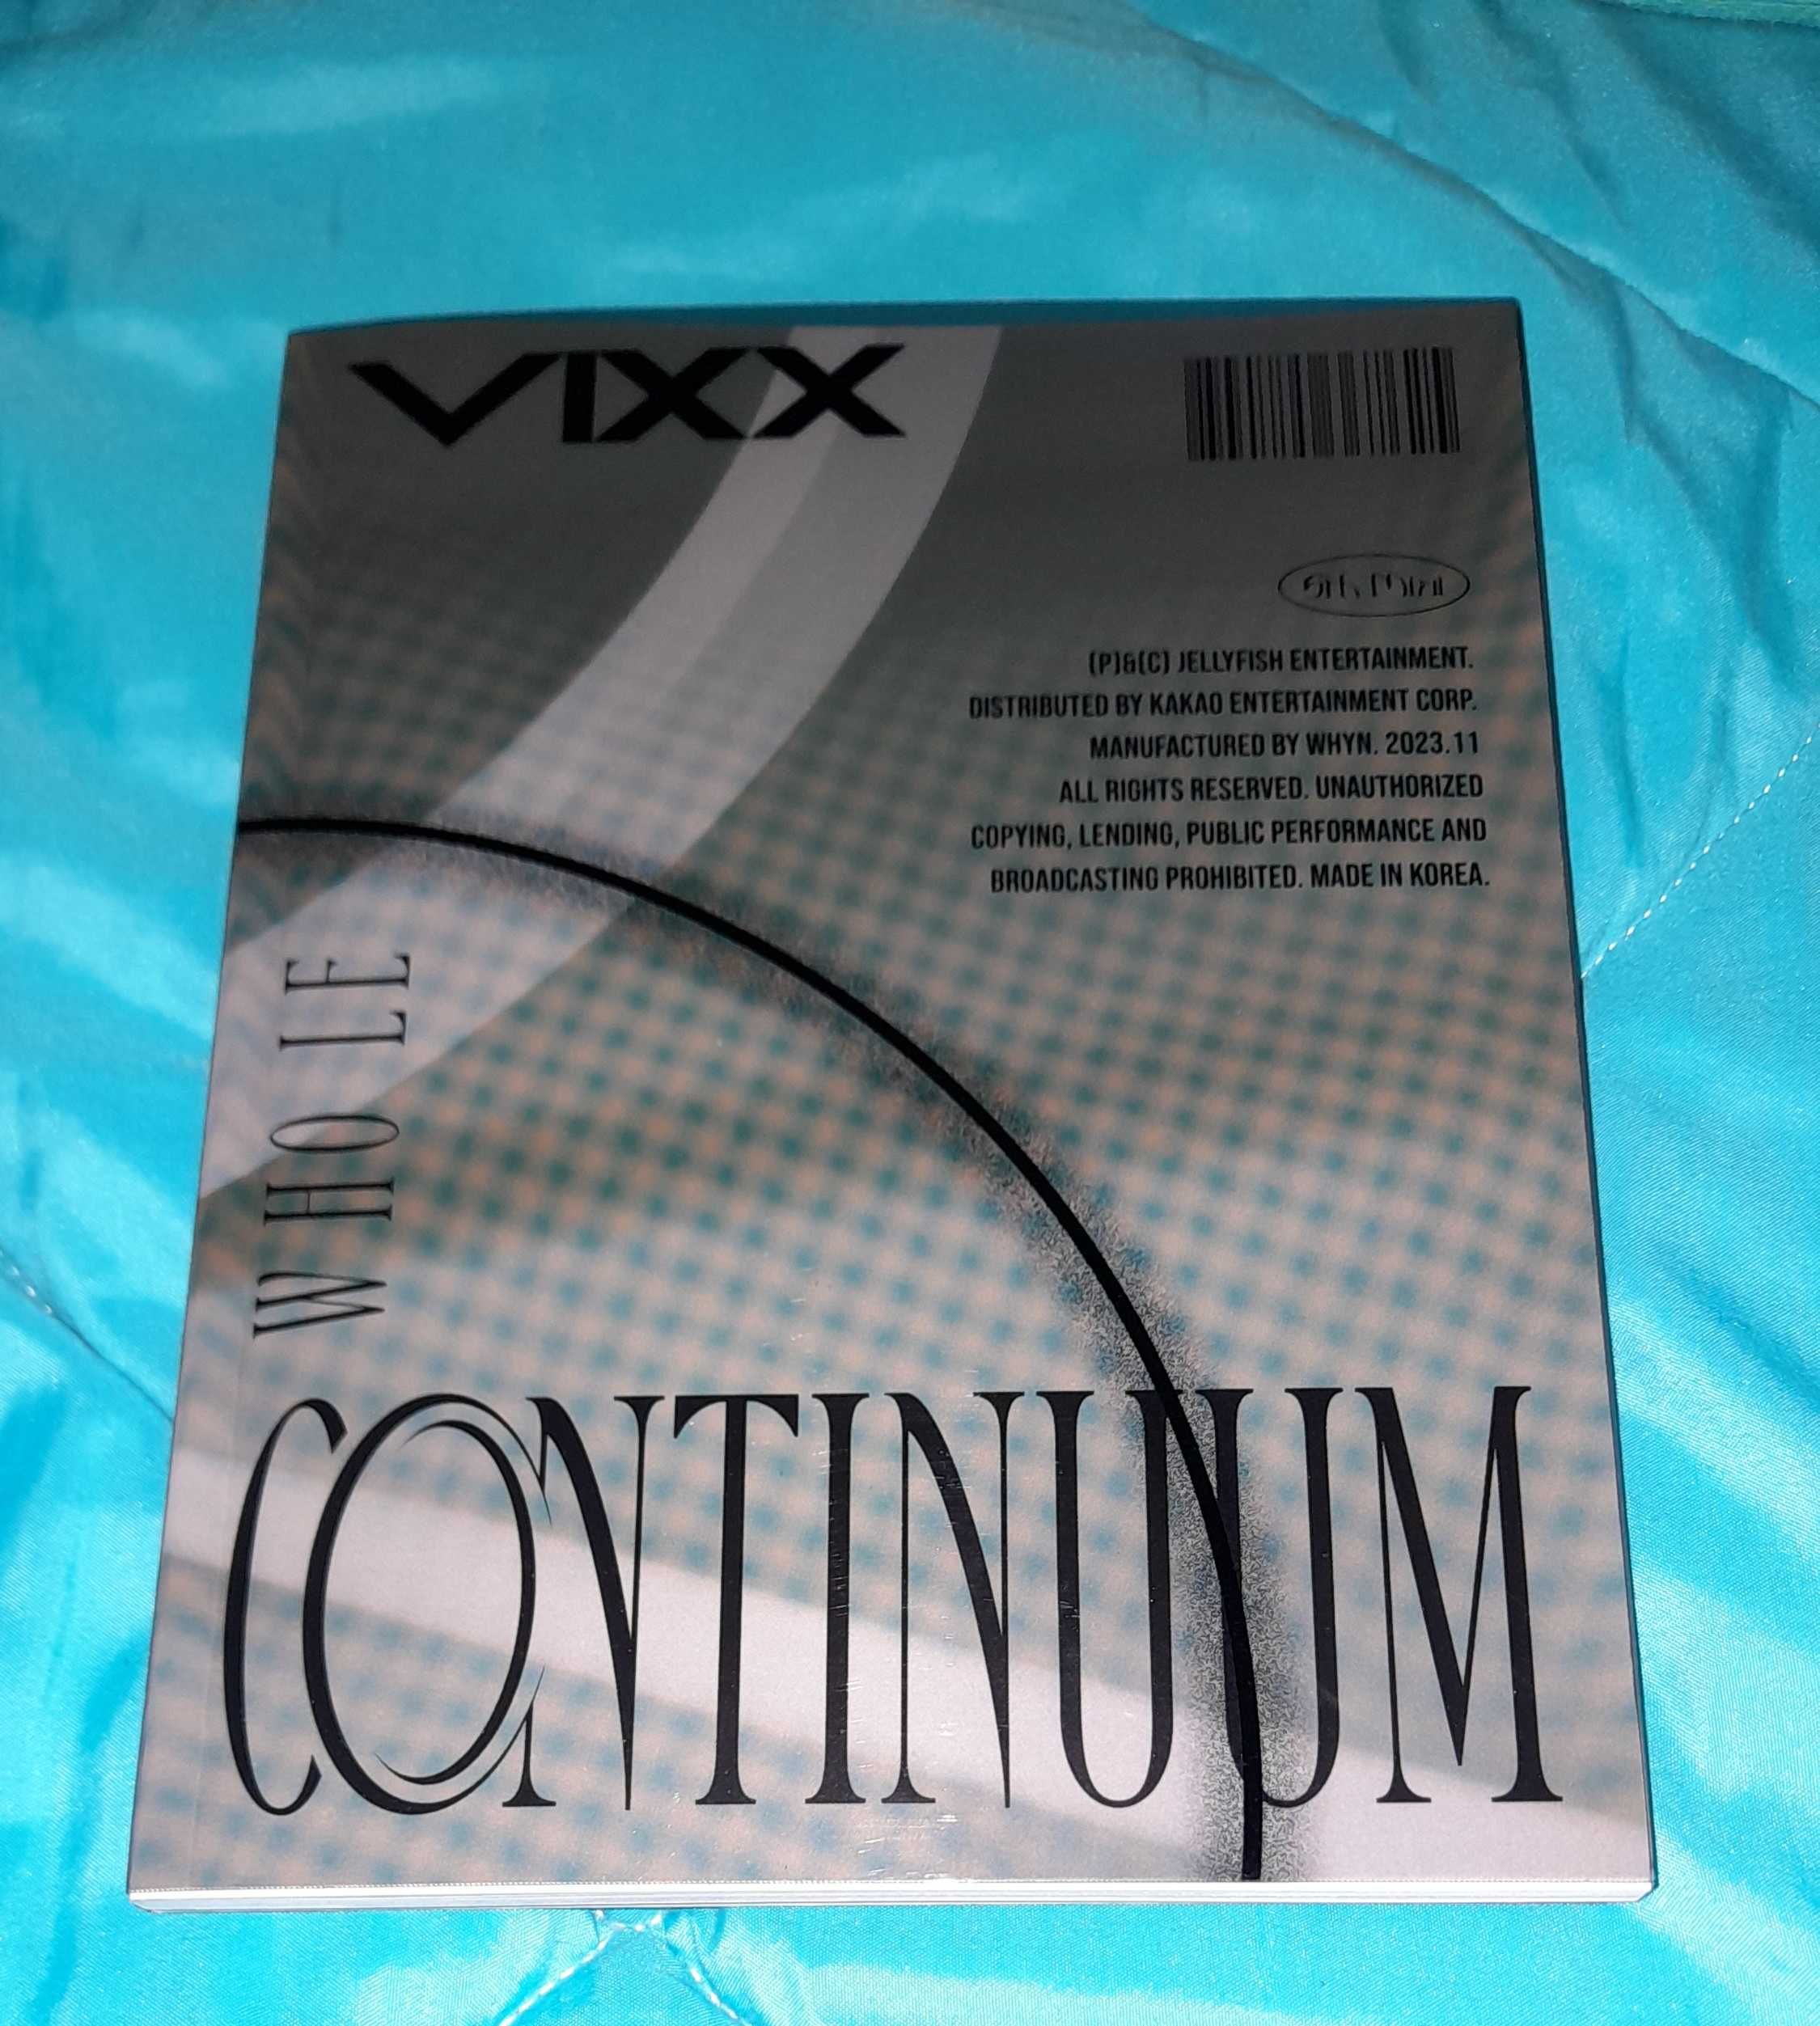 Vixx Continuum (versão whole) - kpop album